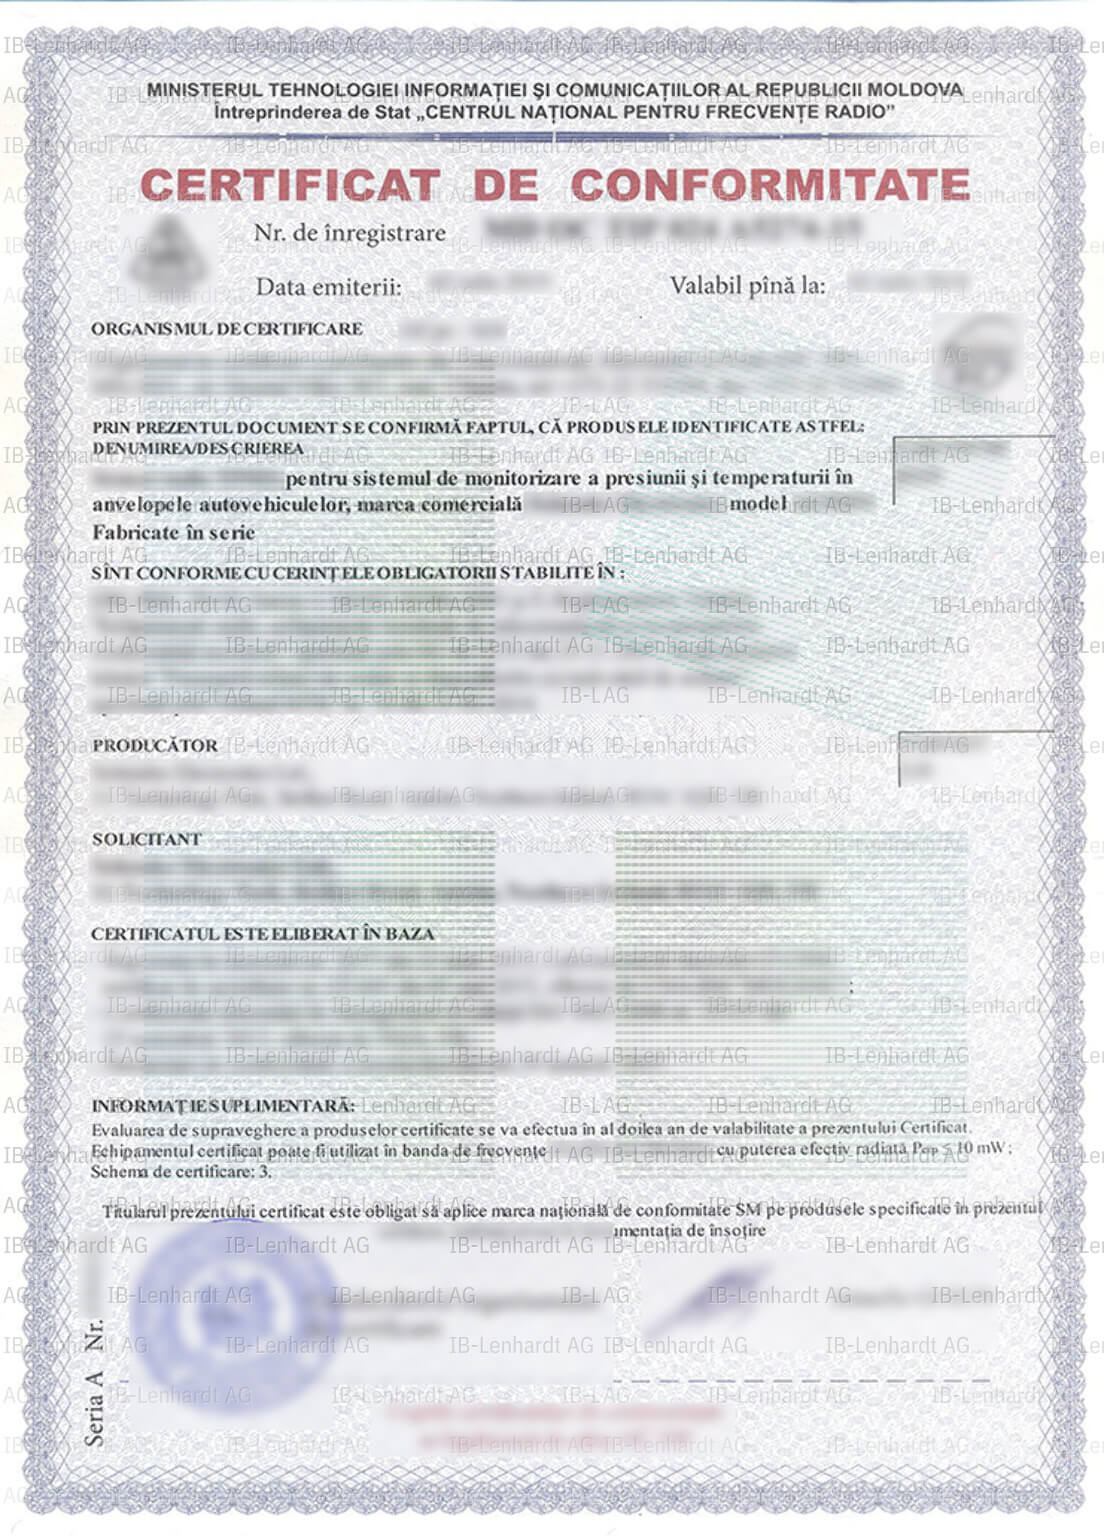 認証書の例 モルドバ共和国